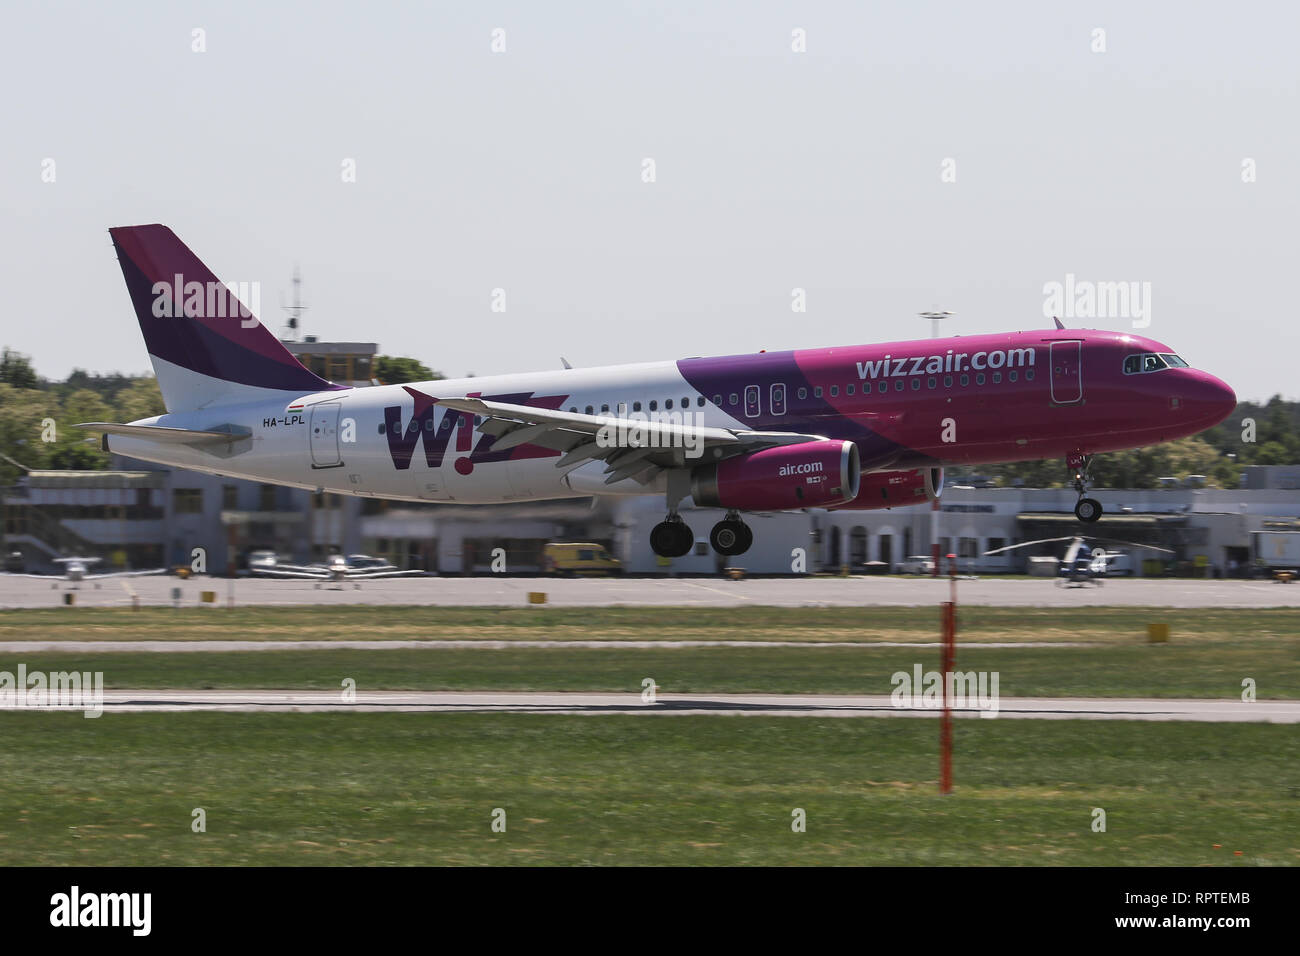 Un Airbus A320-200, exploité par Wizz Air, atterrit à l'aéroport de Poznan-Lawica en Pologne Banque D'Images